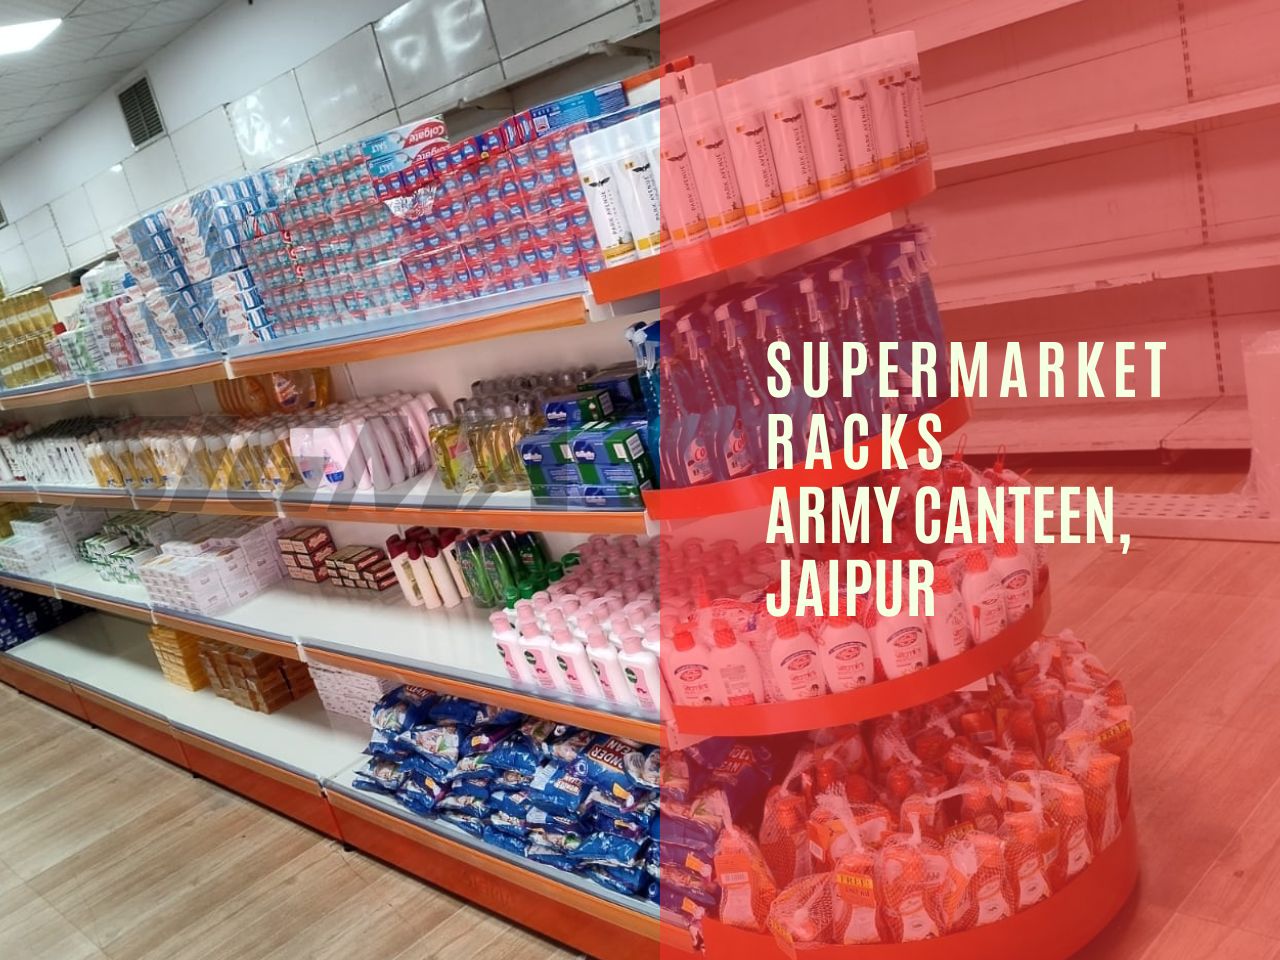 army canteen jaipur.jpg